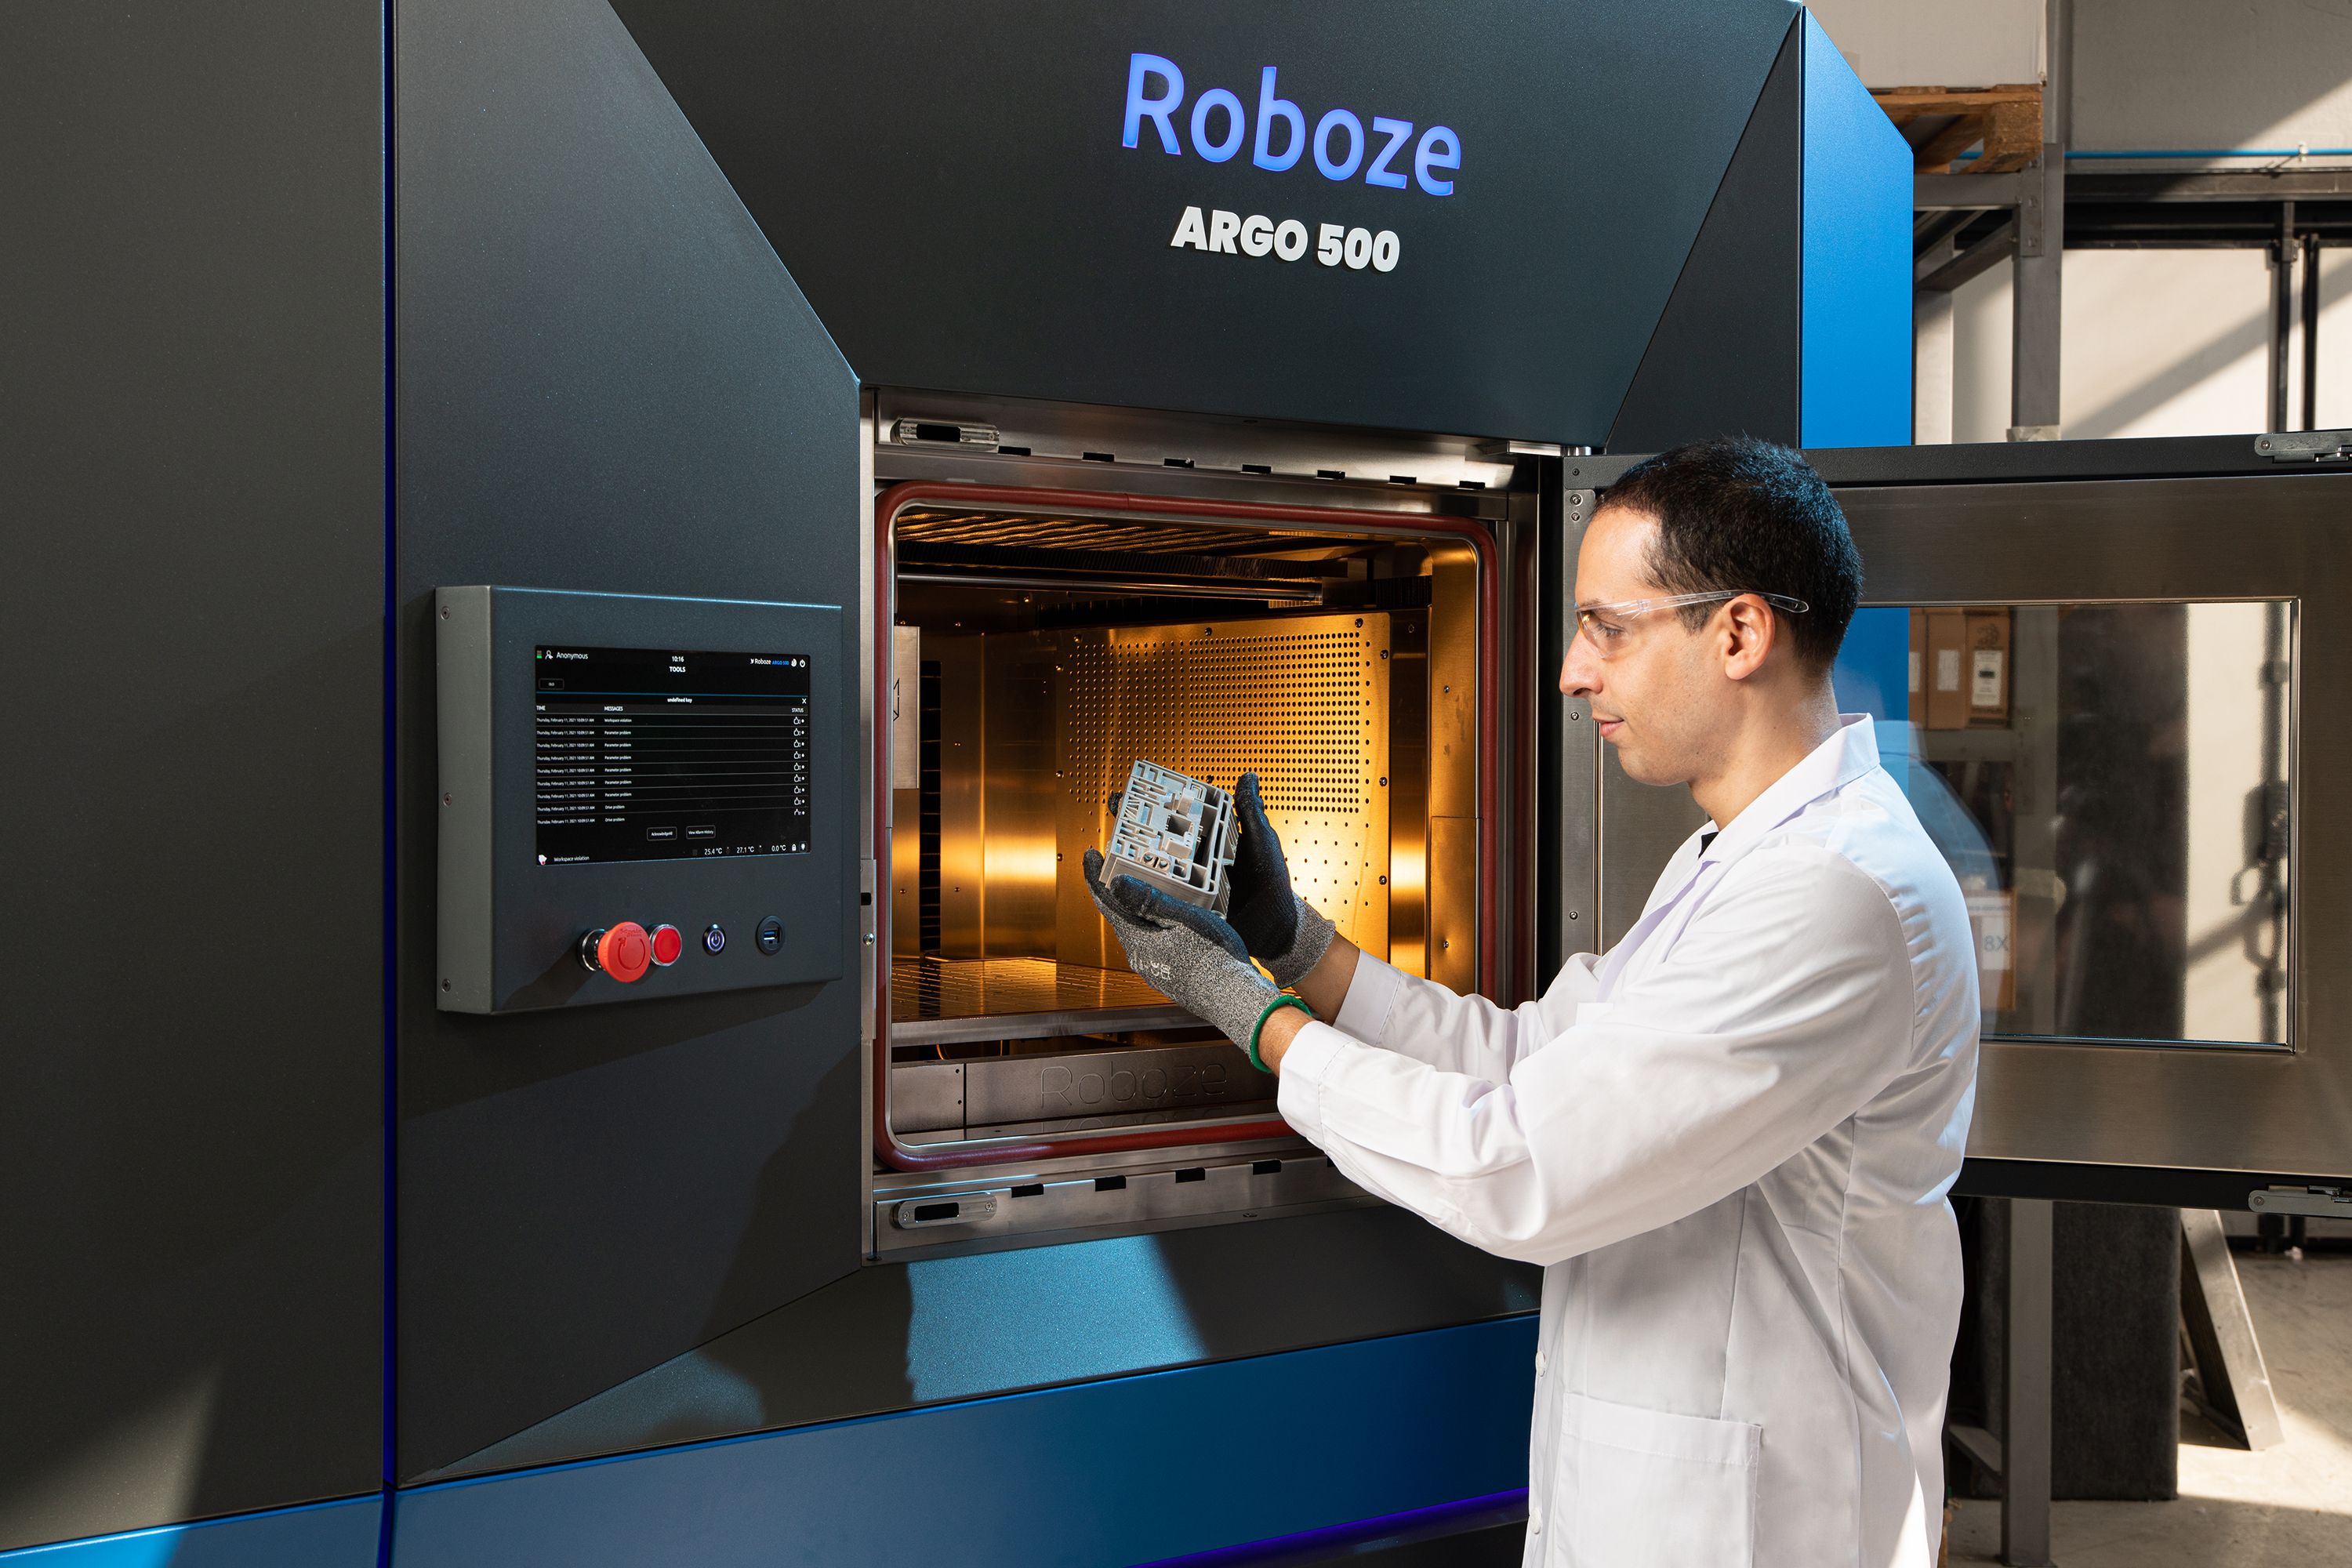 Roboze integriert mit B&R-Technik seinen 3D-Drucker in die industrielle Produktion. Kundenspezifische Superpolymere lassen sich nun schneller und einfacher herstellen.